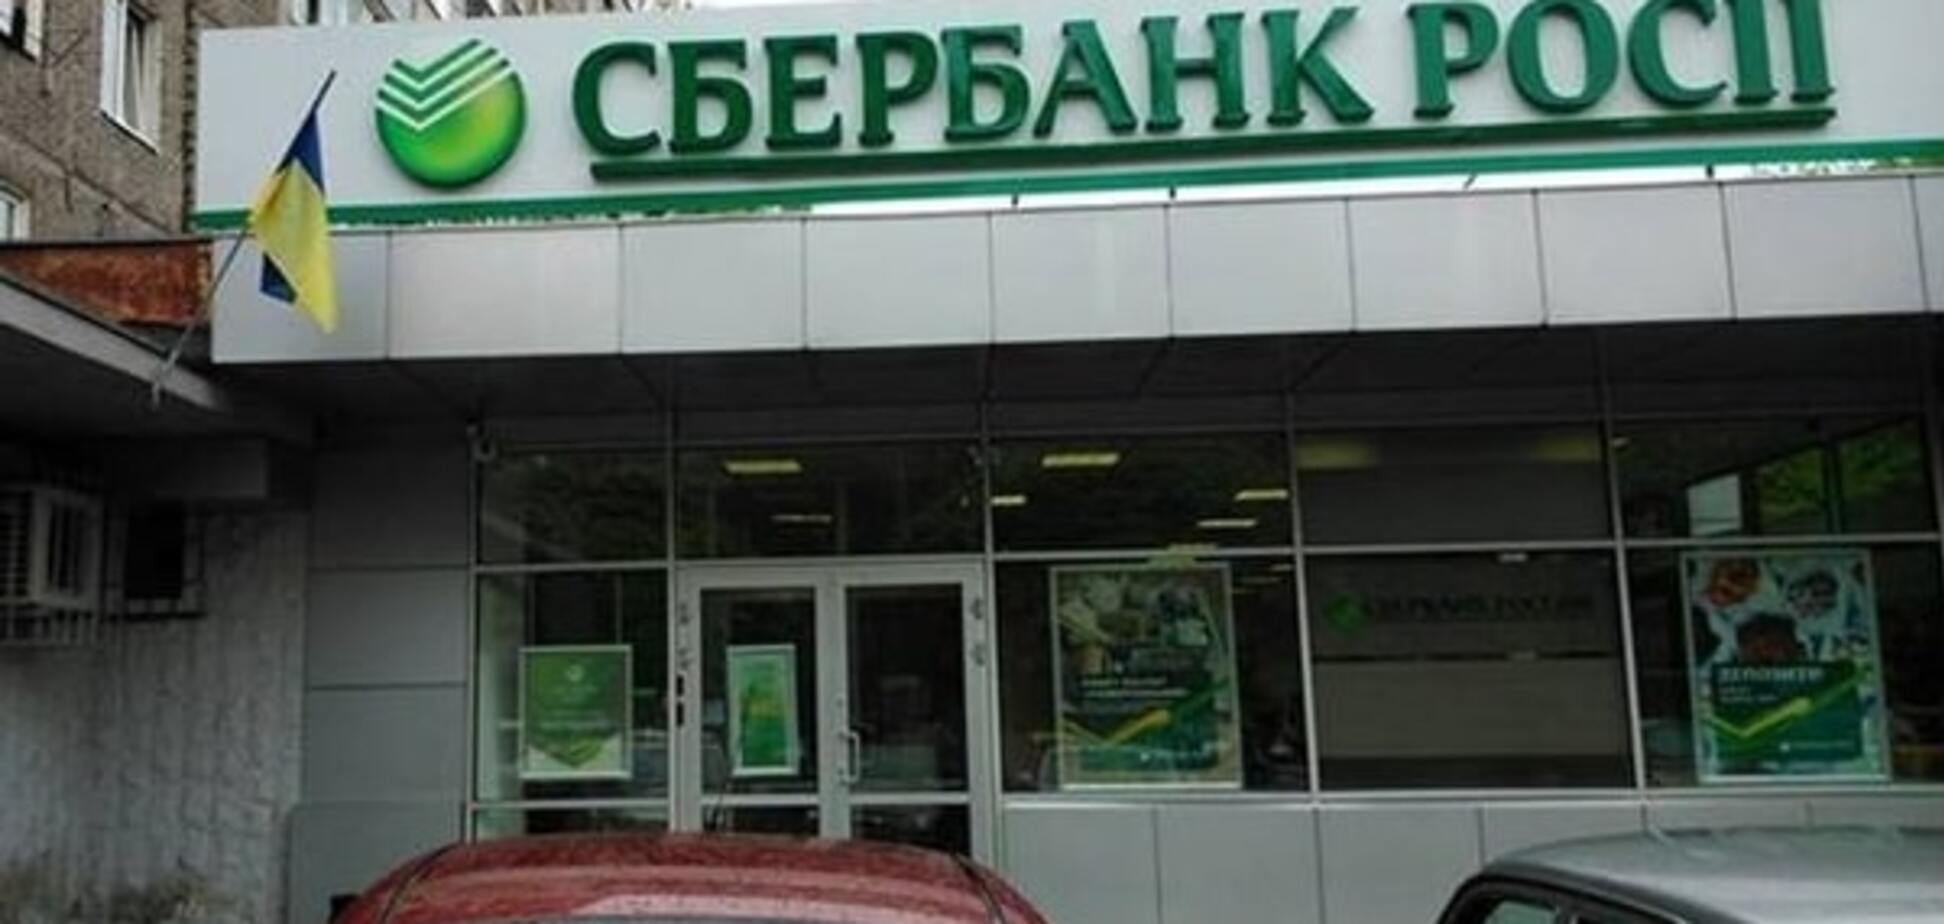 Порошенко предложили запретить 'Сбербанк России' в Украине